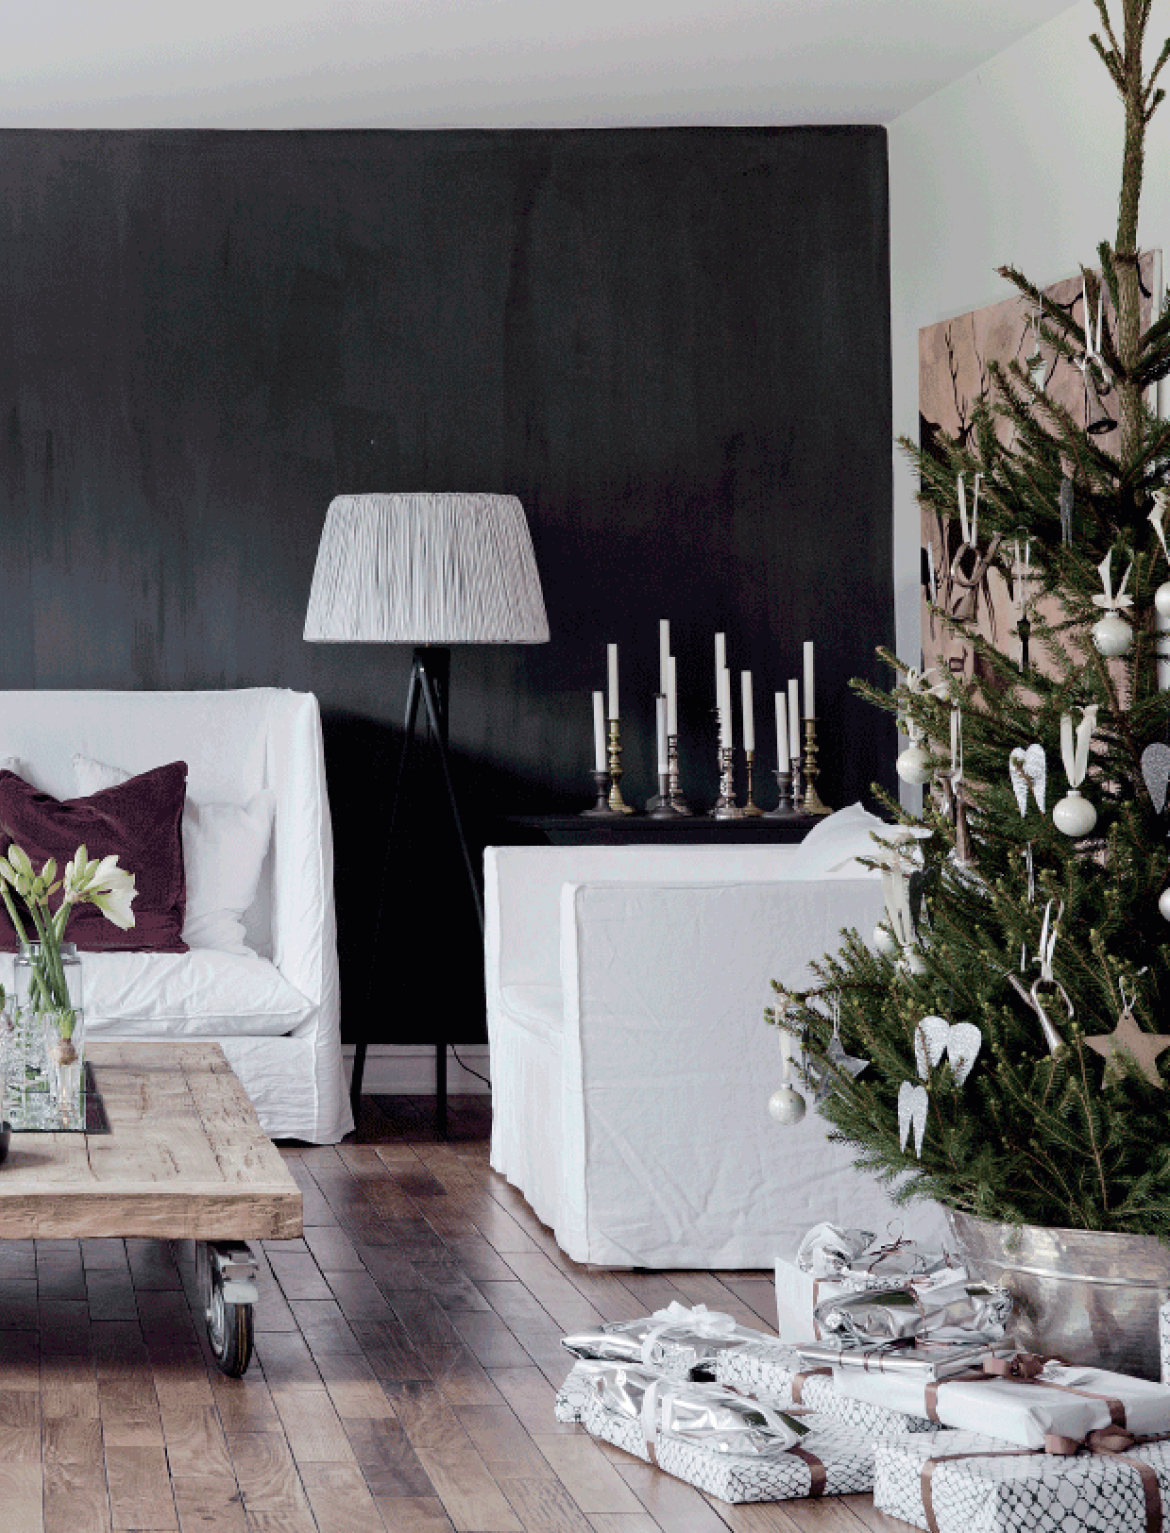 Białe sofy i fotele w lnianych pokrowcach,czarna ściana,stolik z palety na kółkach,zielona choinka w białych dekoracjach świątecznych (47764)